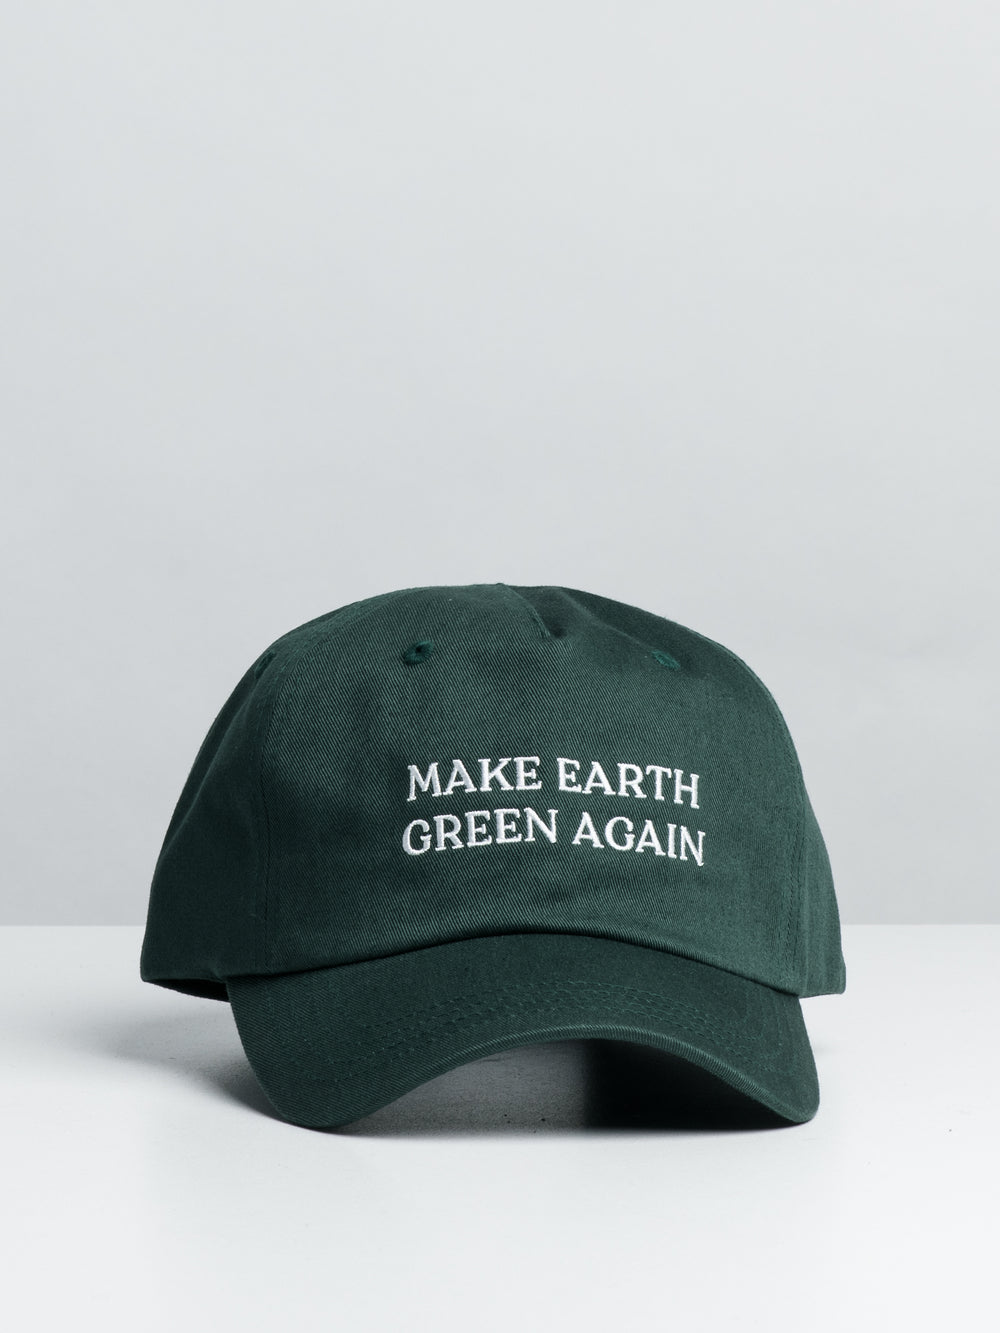 TENTREE MAKE EARTH GRN AGAIN PEAK HAT - CLEARANCE